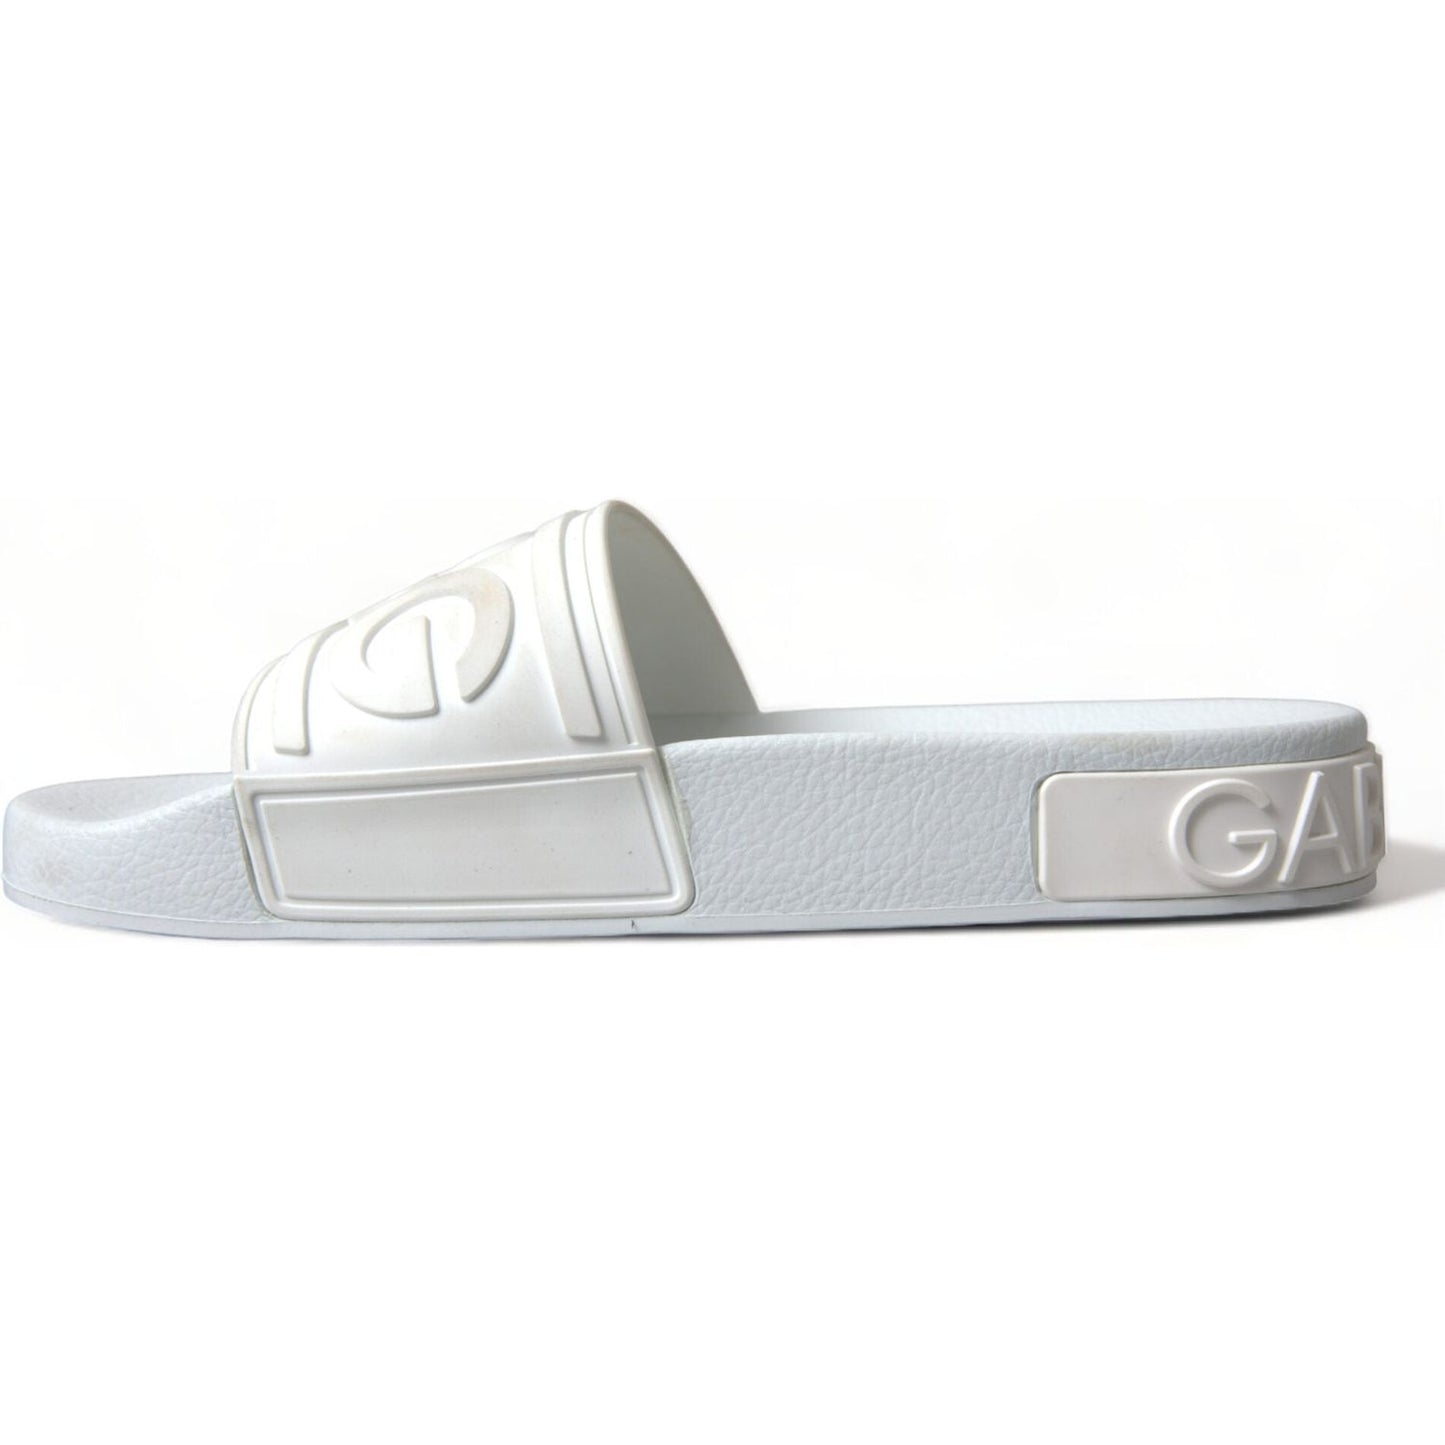 Dolce & Gabbana Elegant White Logo Slides white-rubber-sandals-slides-beachwear-shoes 465A3226-BG-scaled-b83f1e5e-f3e.jpg